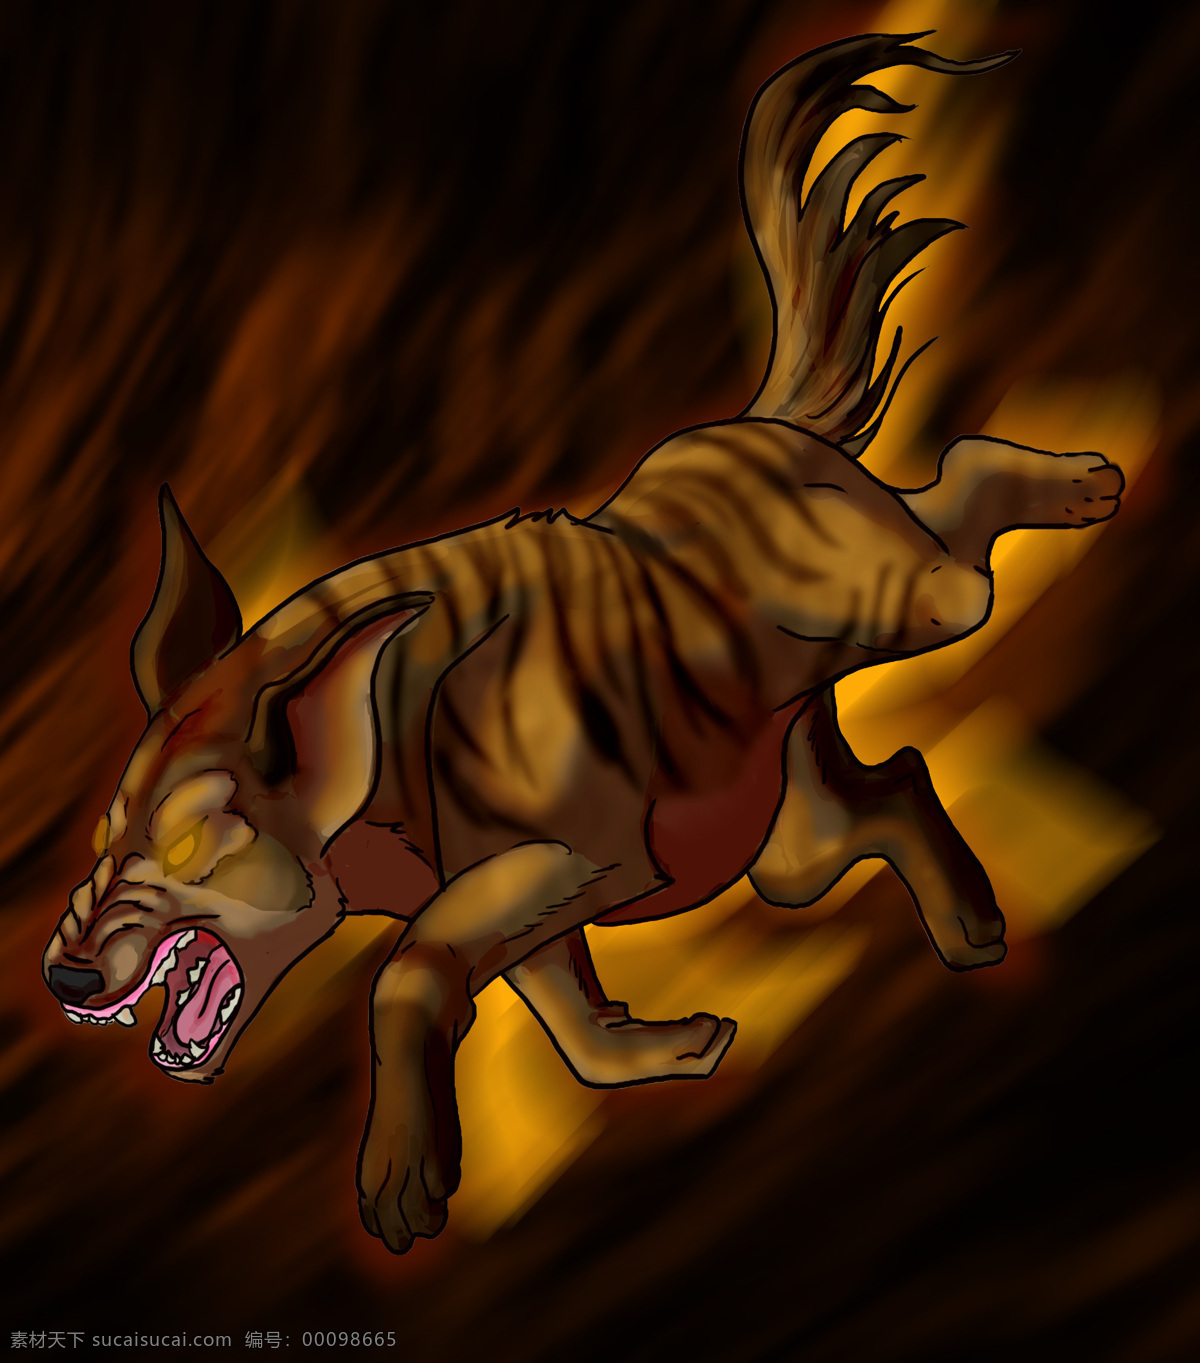 插画动物 卡通动物 卡通漫画动物 狼 生物世界 野生动物 野狼设计素材 野狼模板下载 野狼 漫画动物 动物设计图片